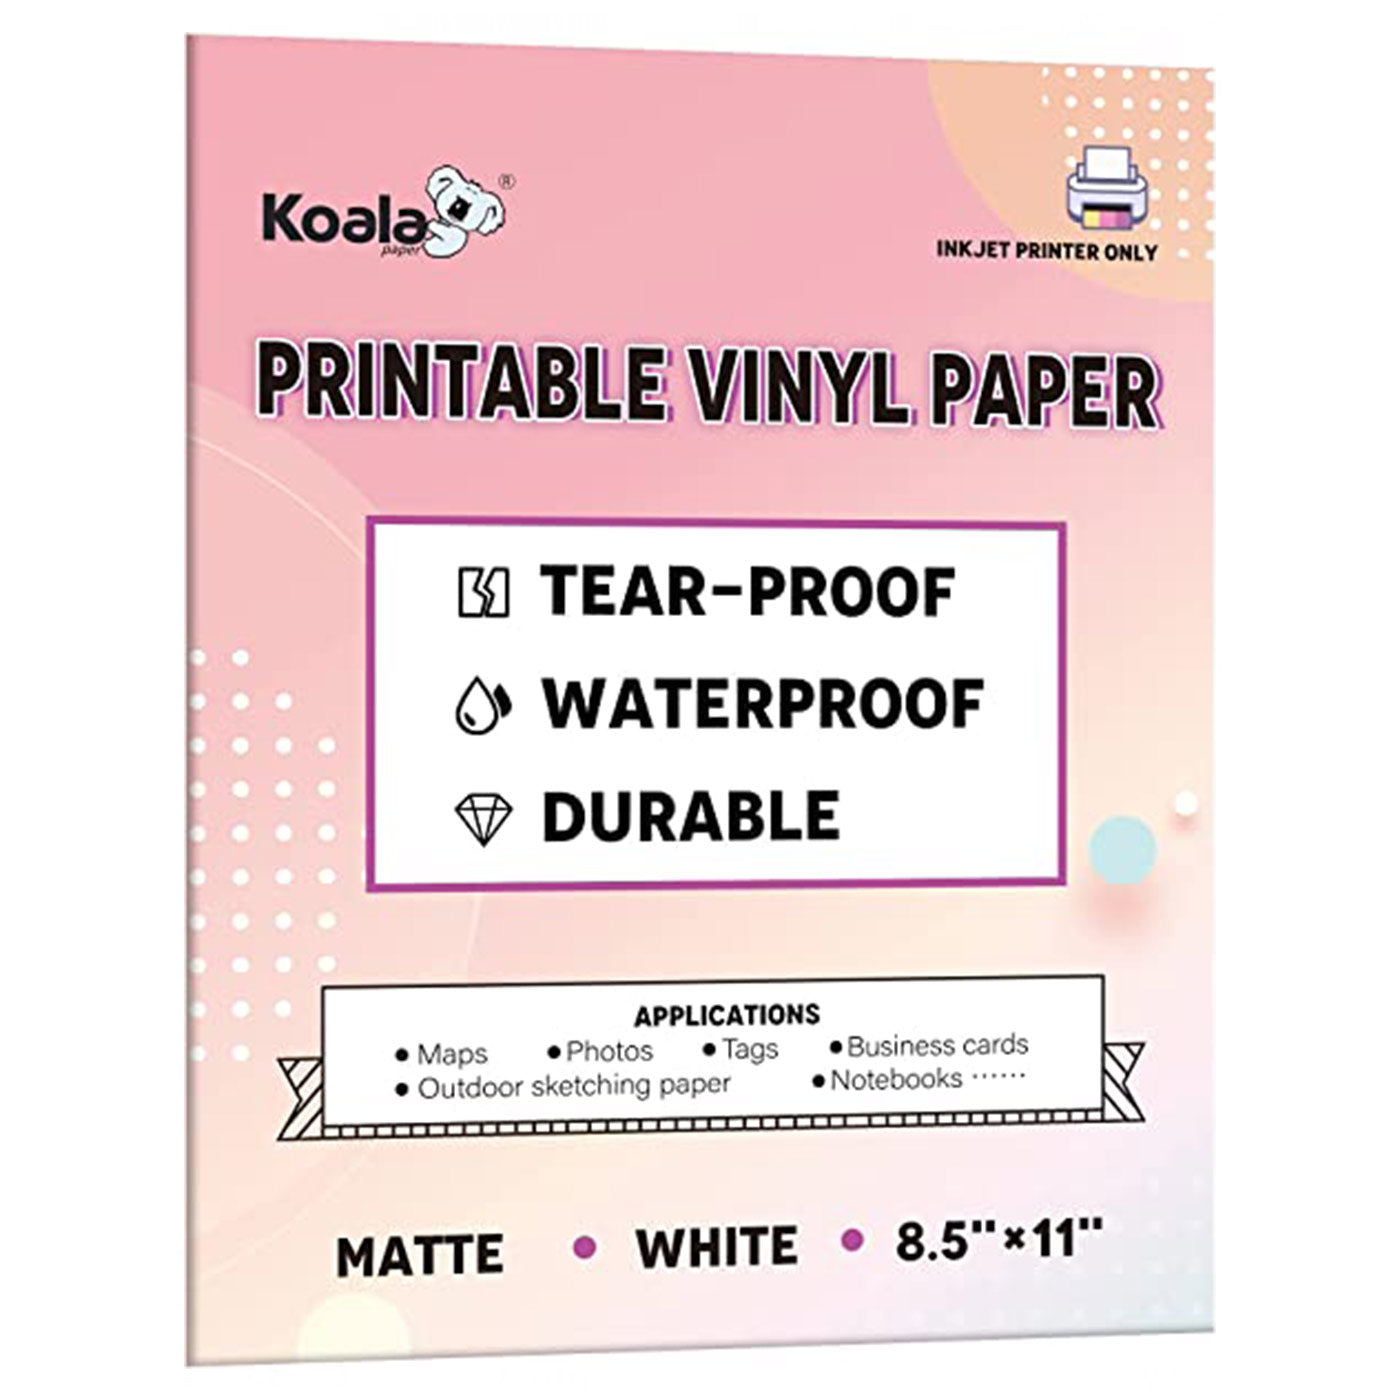 Koala Vinyl Sticker Paper Matte Printable Label 8.5x11 Inches Full Sheet for Inkjet Printer 20 Sheets, White